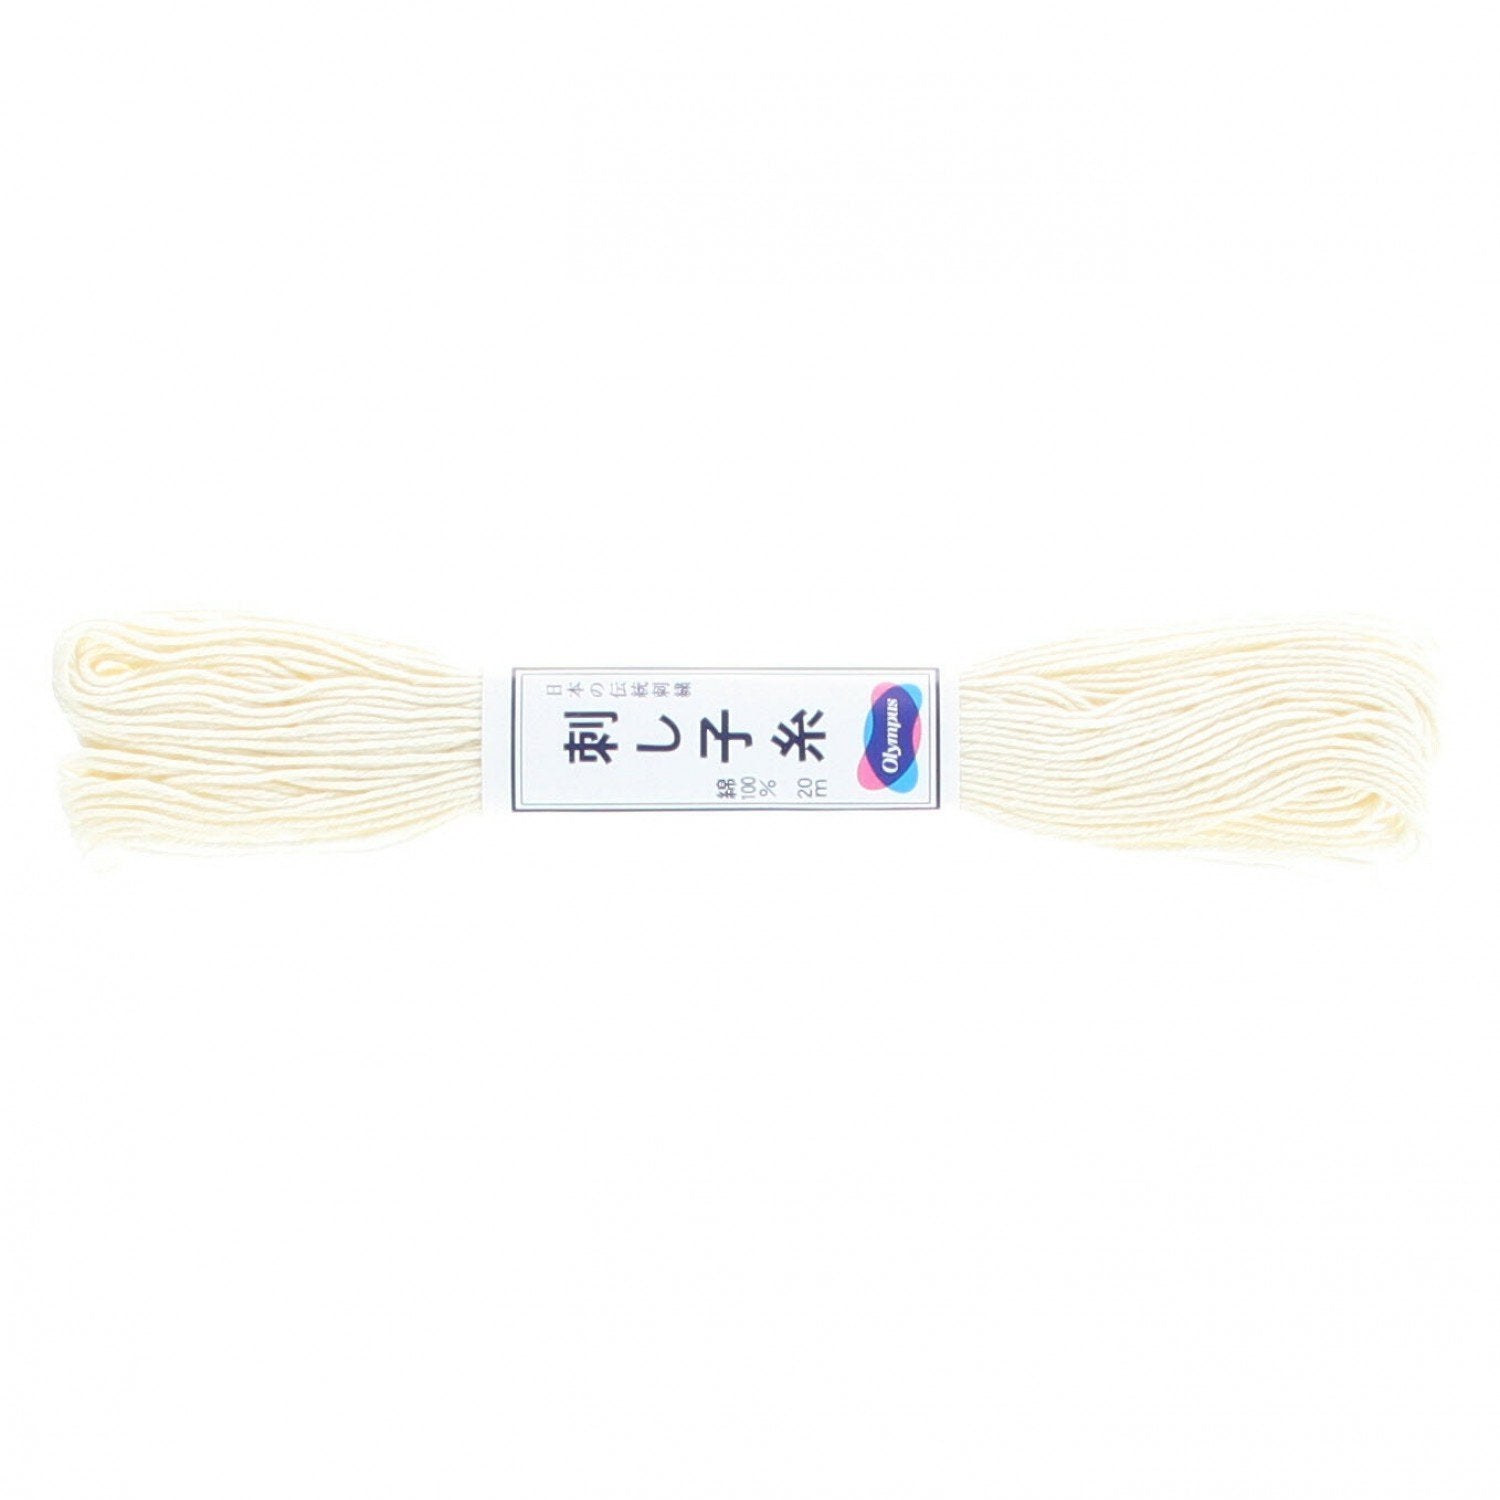 Sashiko Thread Off White-Notion-Spool of Thread